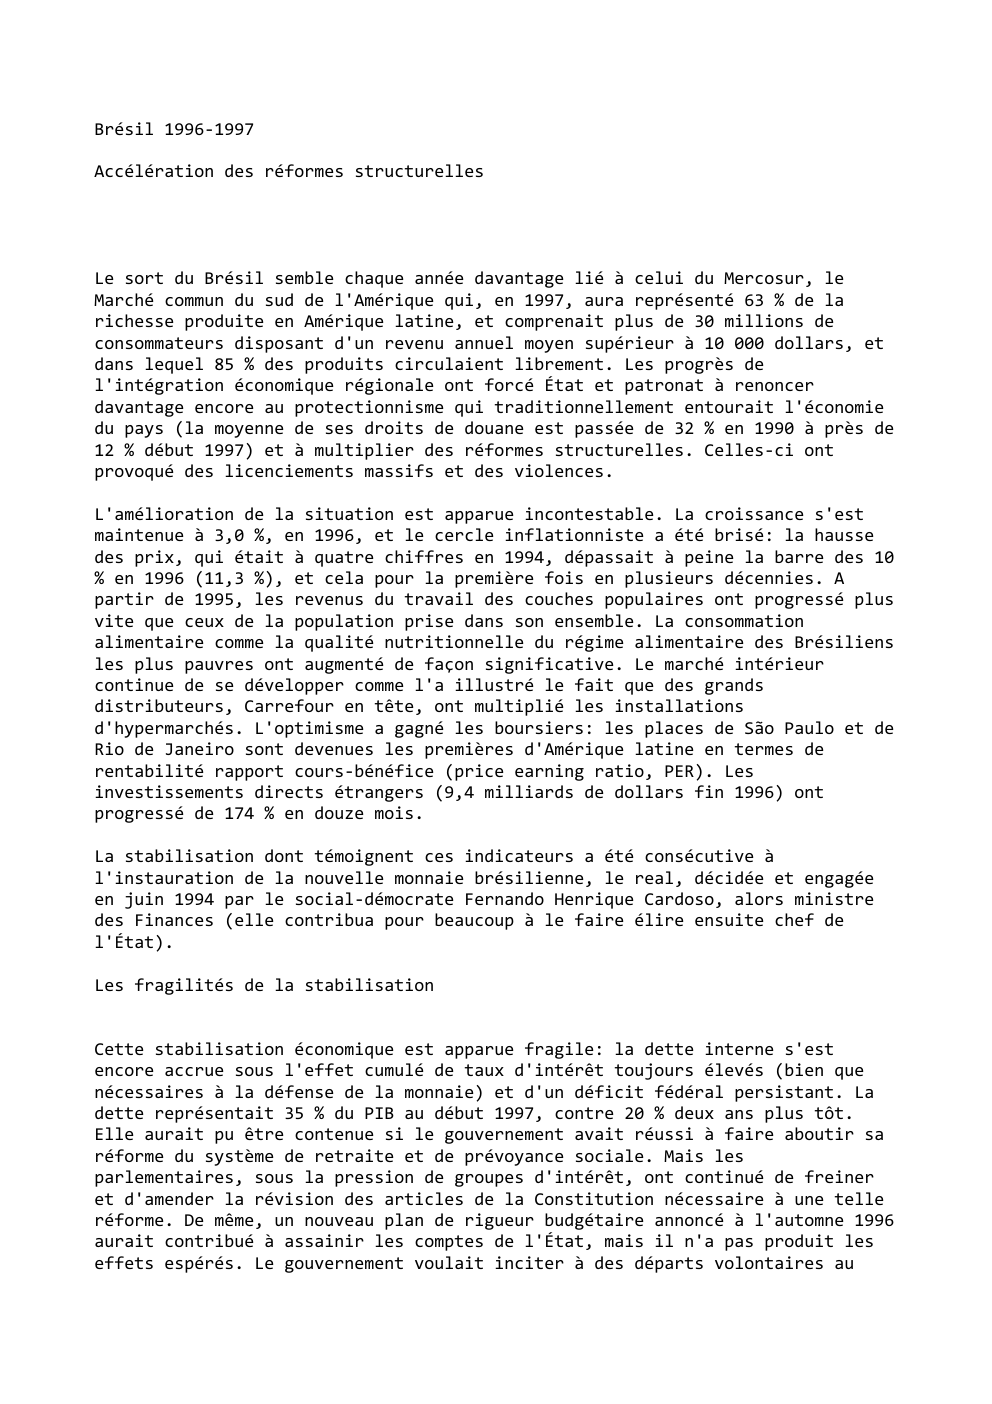 Prévisualisation du document Brésil 1996-1997
Accélération des réformes structurelles

Le sort du Brésil semble chaque année davantage lié à celui du Mercosur, le...